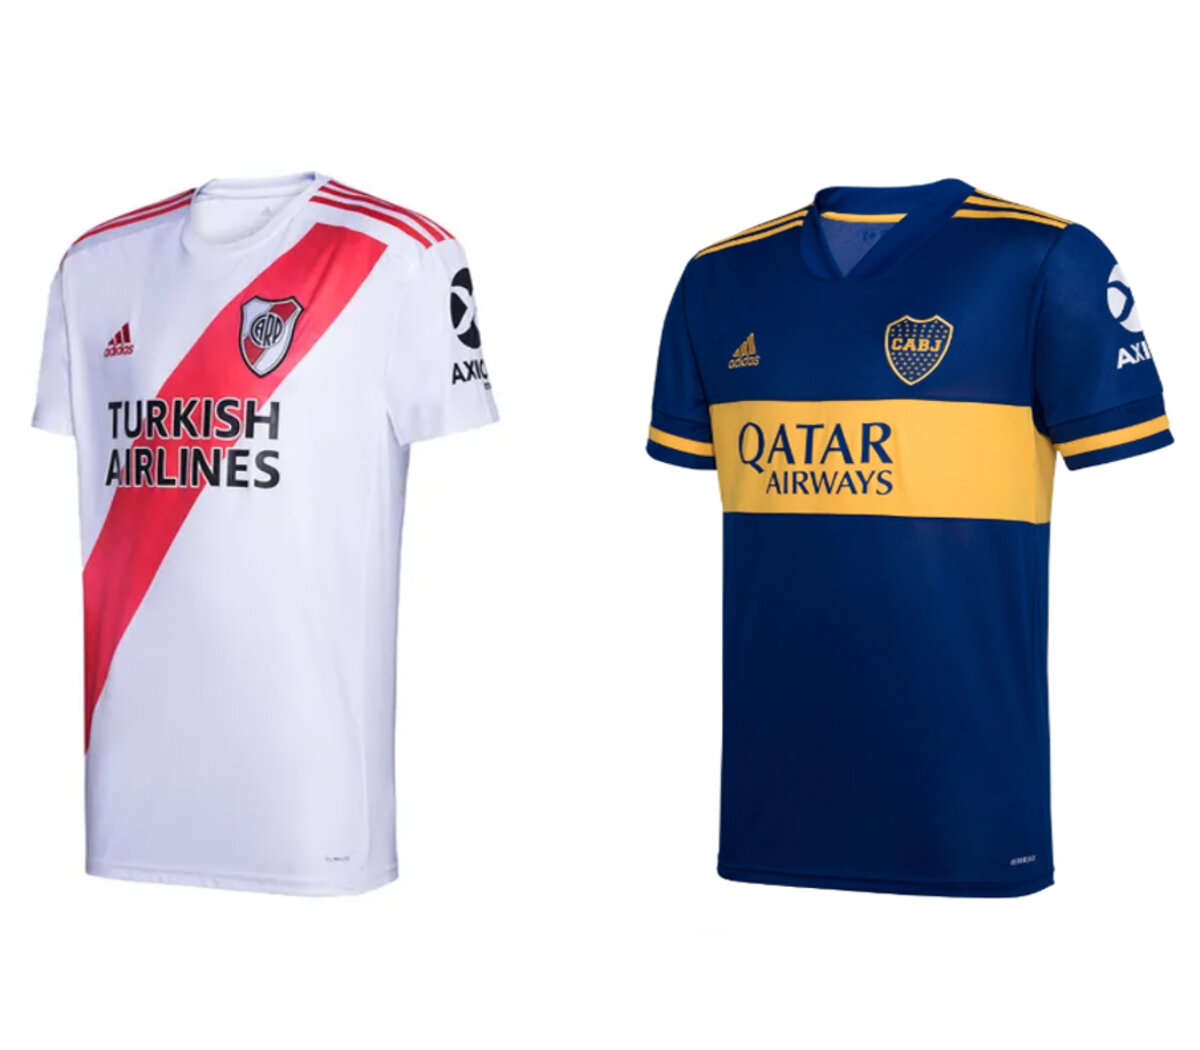 camisetas de clubes argentinos